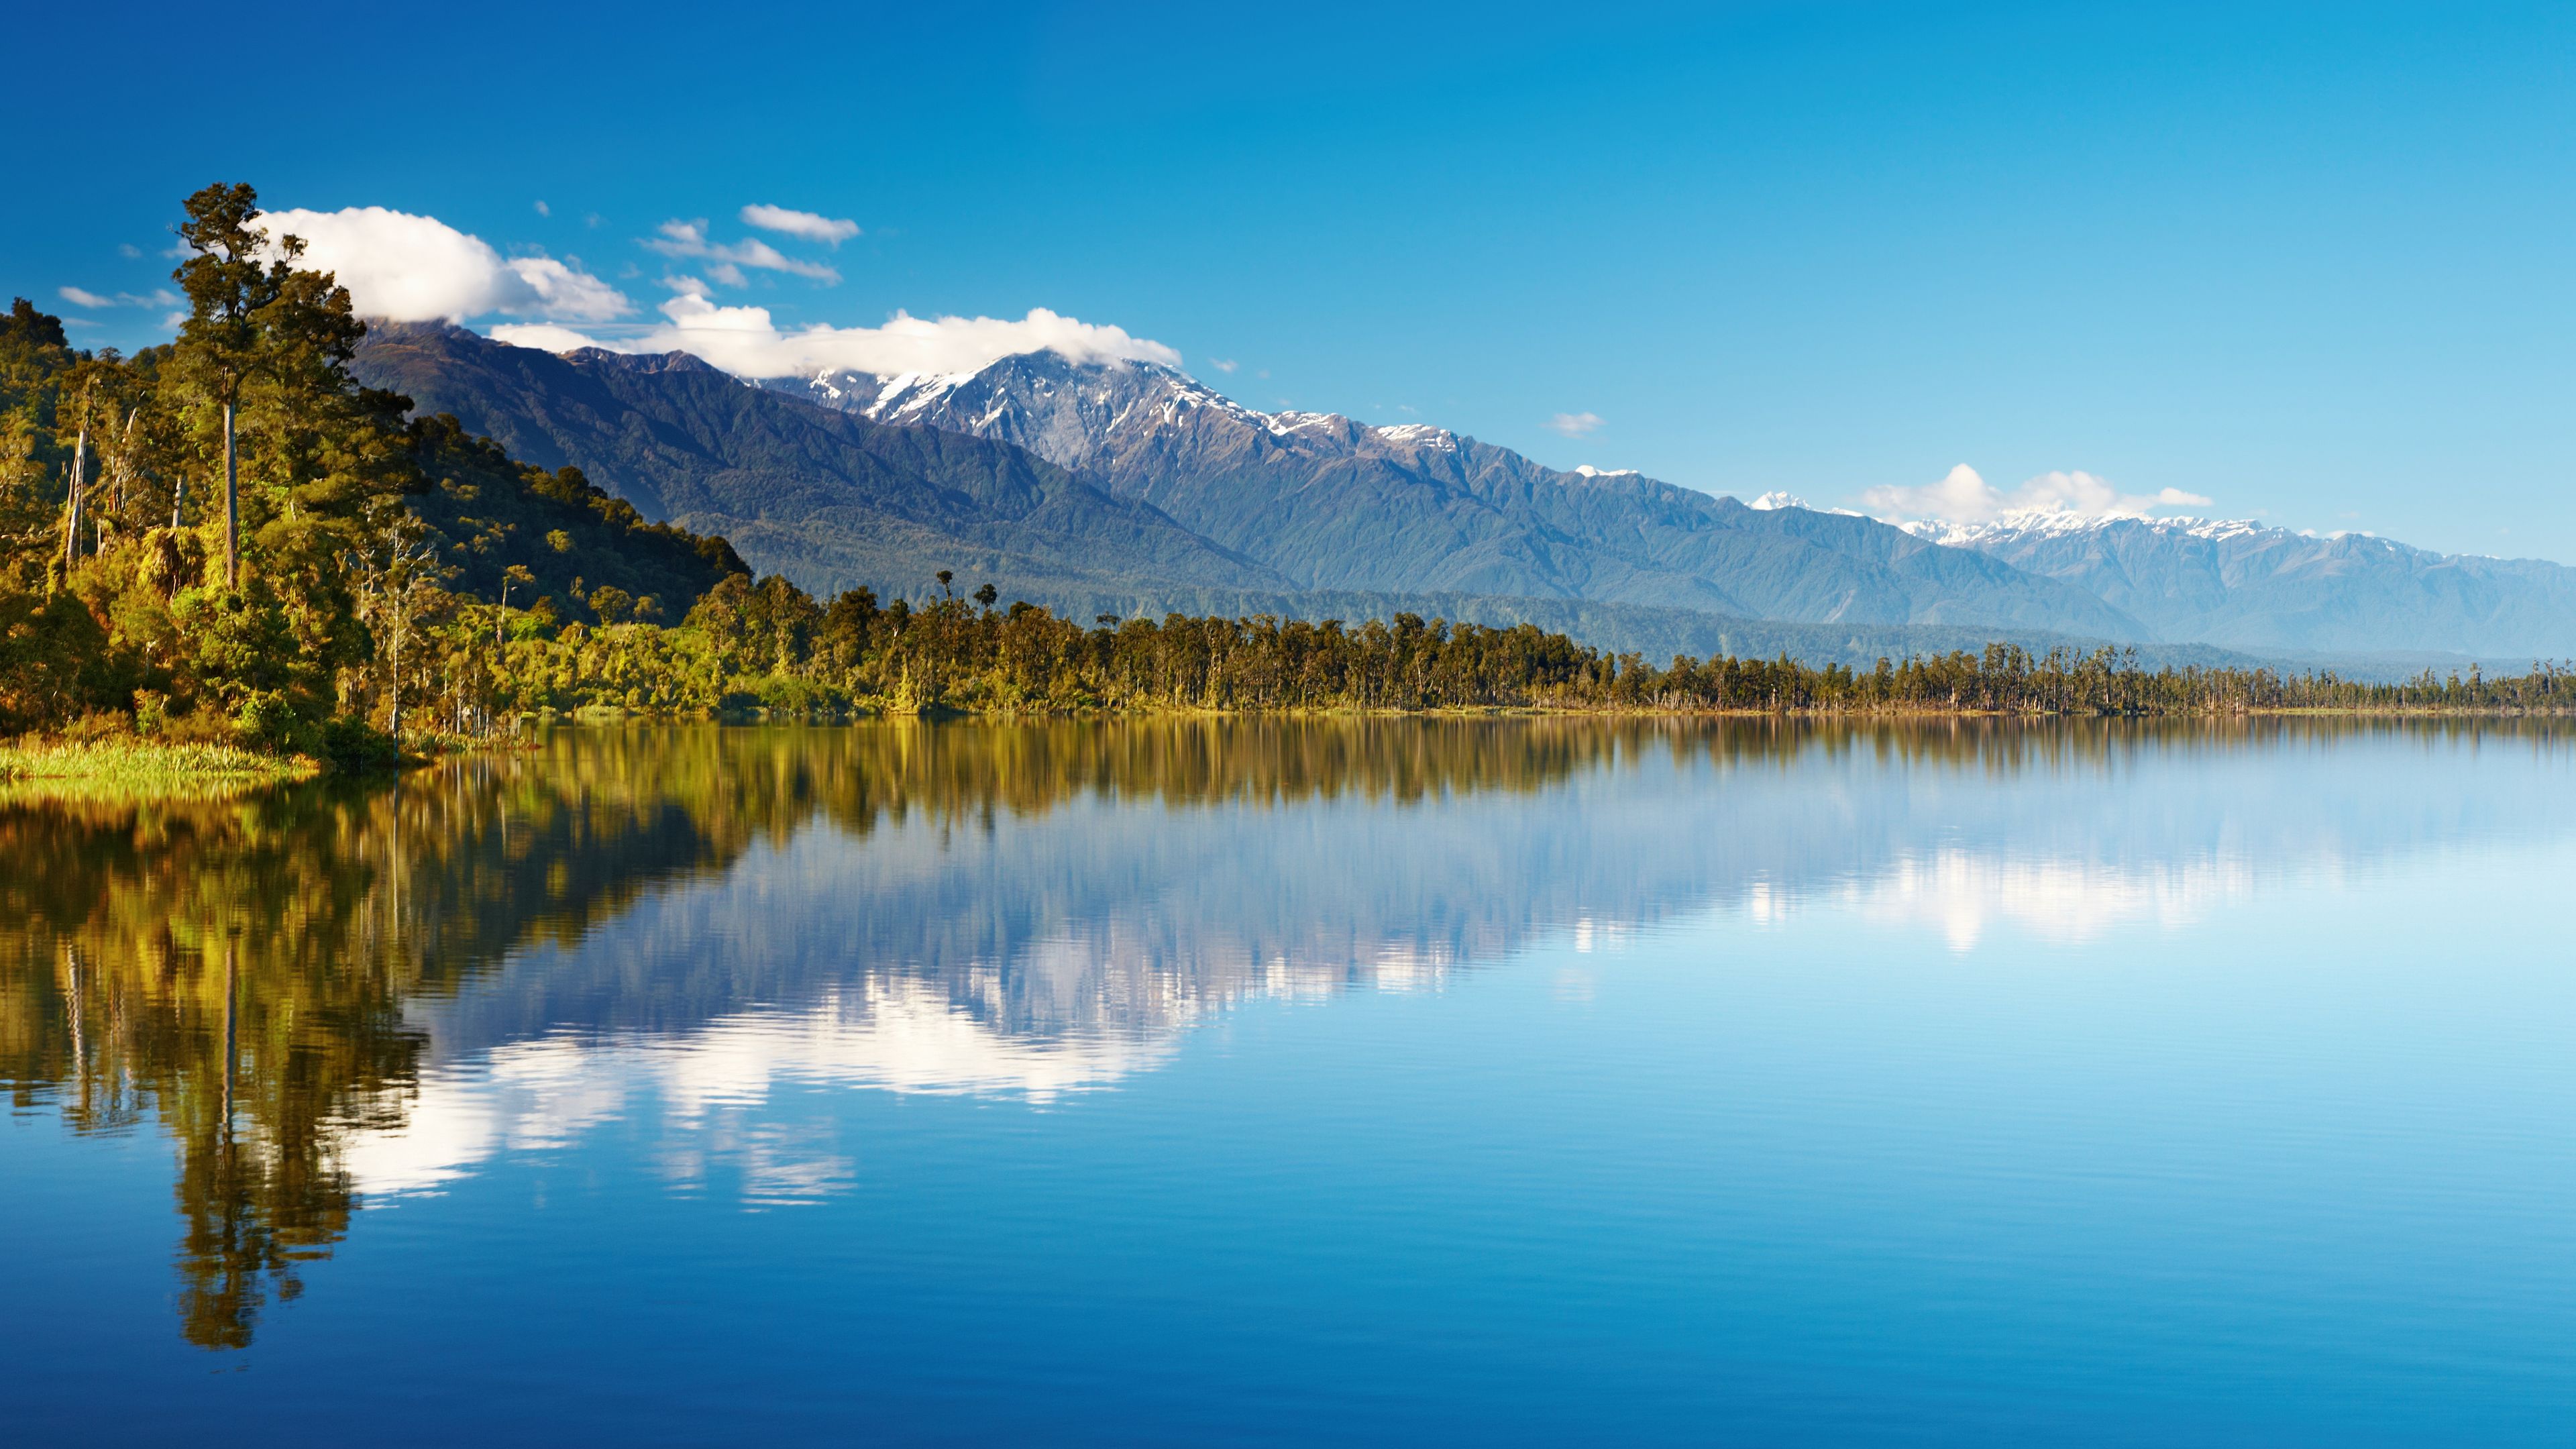 Das Wasser eines Neuseelaendischen Sees ist so klar und Flach das eine optimale Spiegelung der Berge im Hintergrund moeglich ist